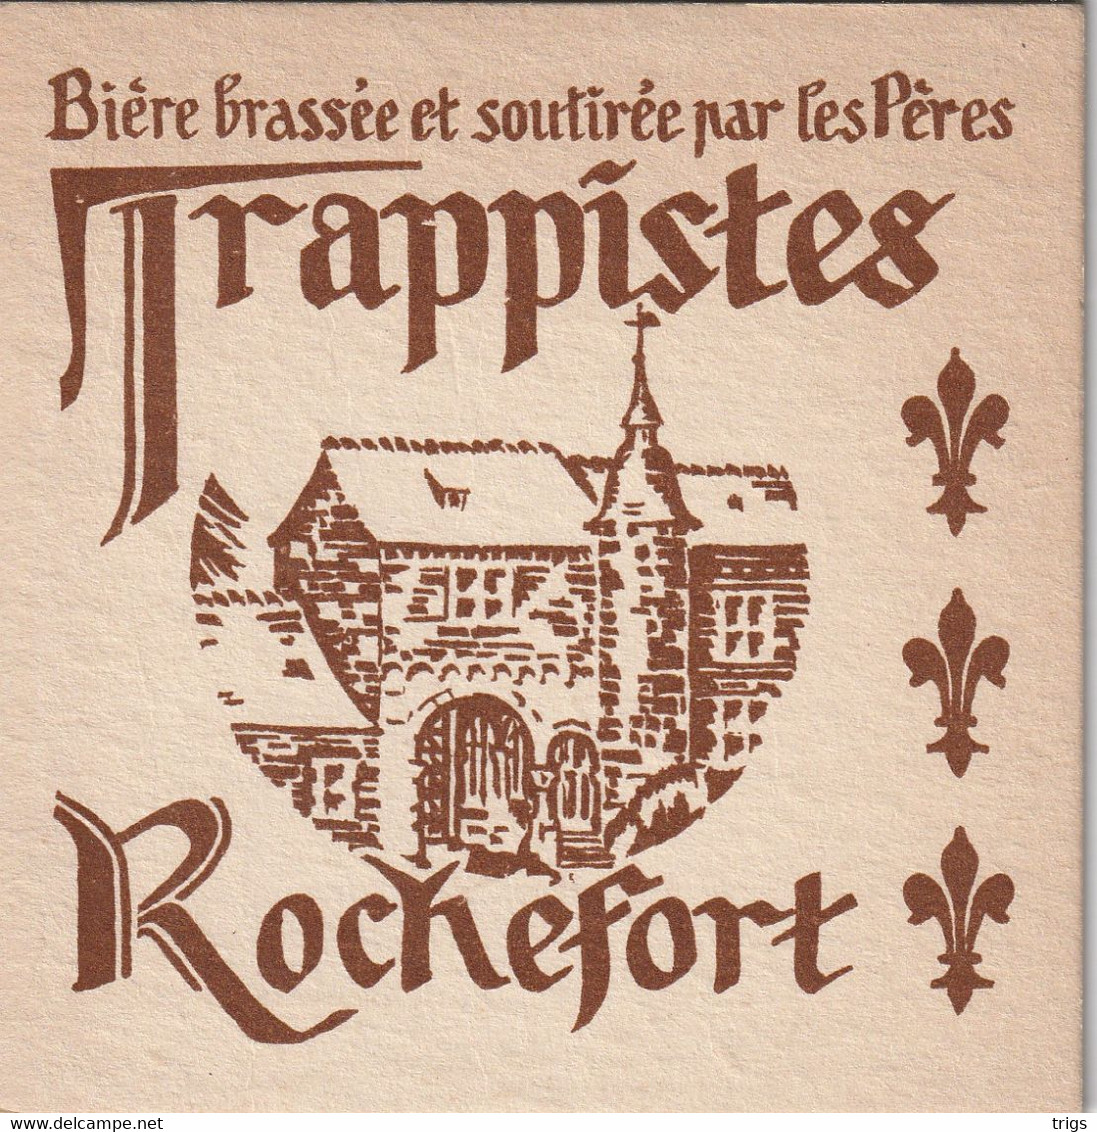 Trappistes Rochefort - Untersetzer